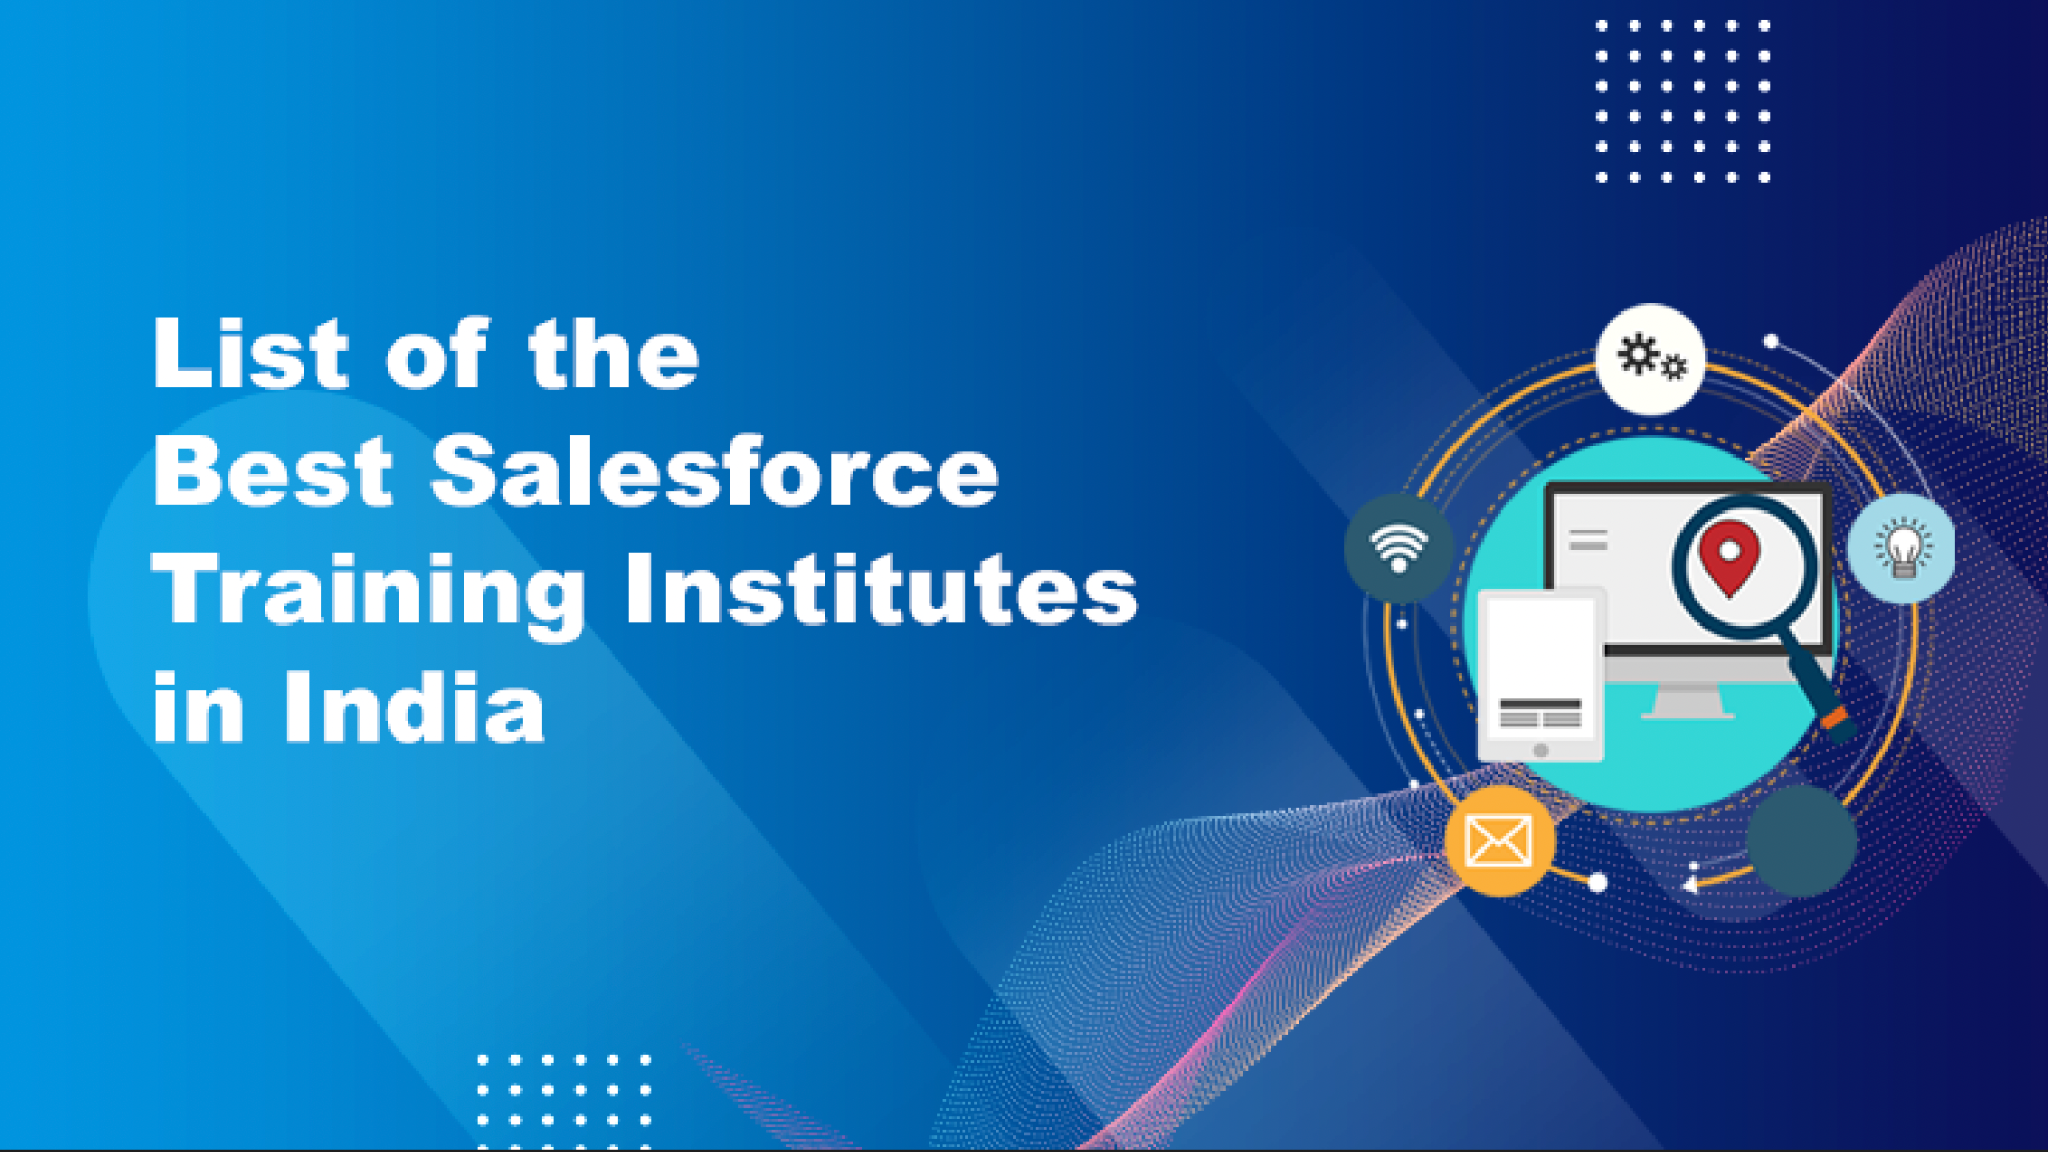 Salesforce Training Institutes in India